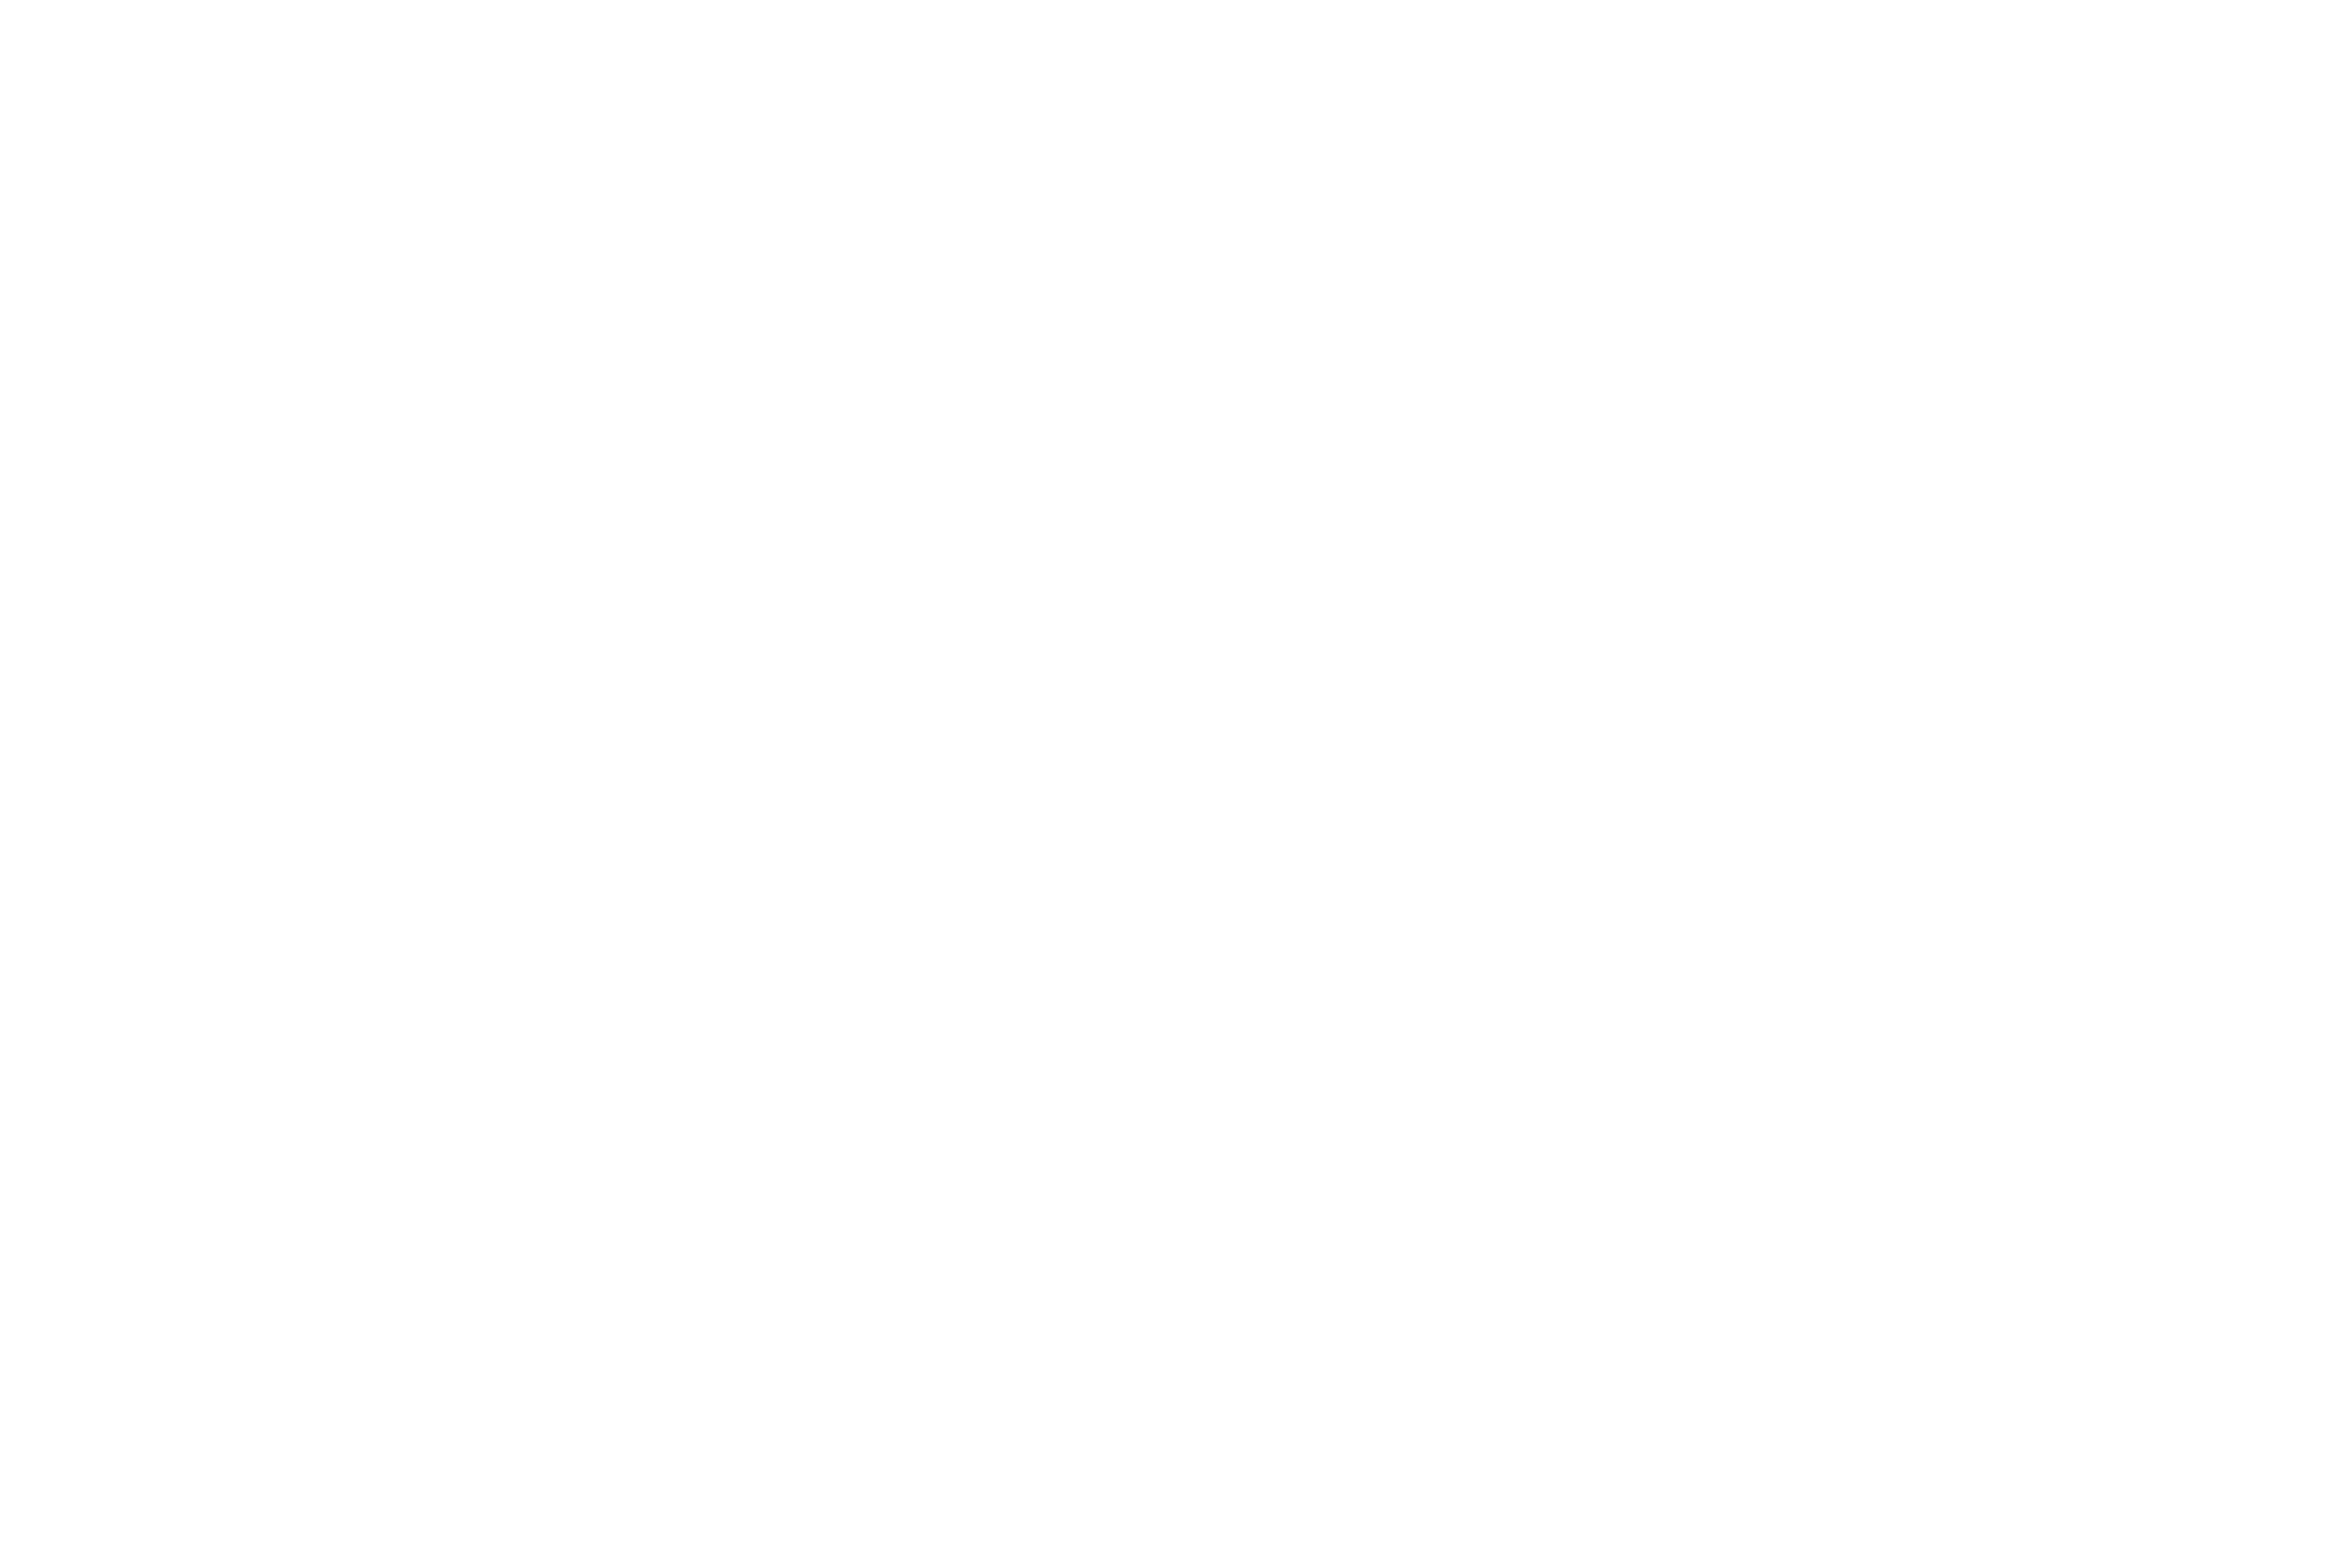 Owen Wood